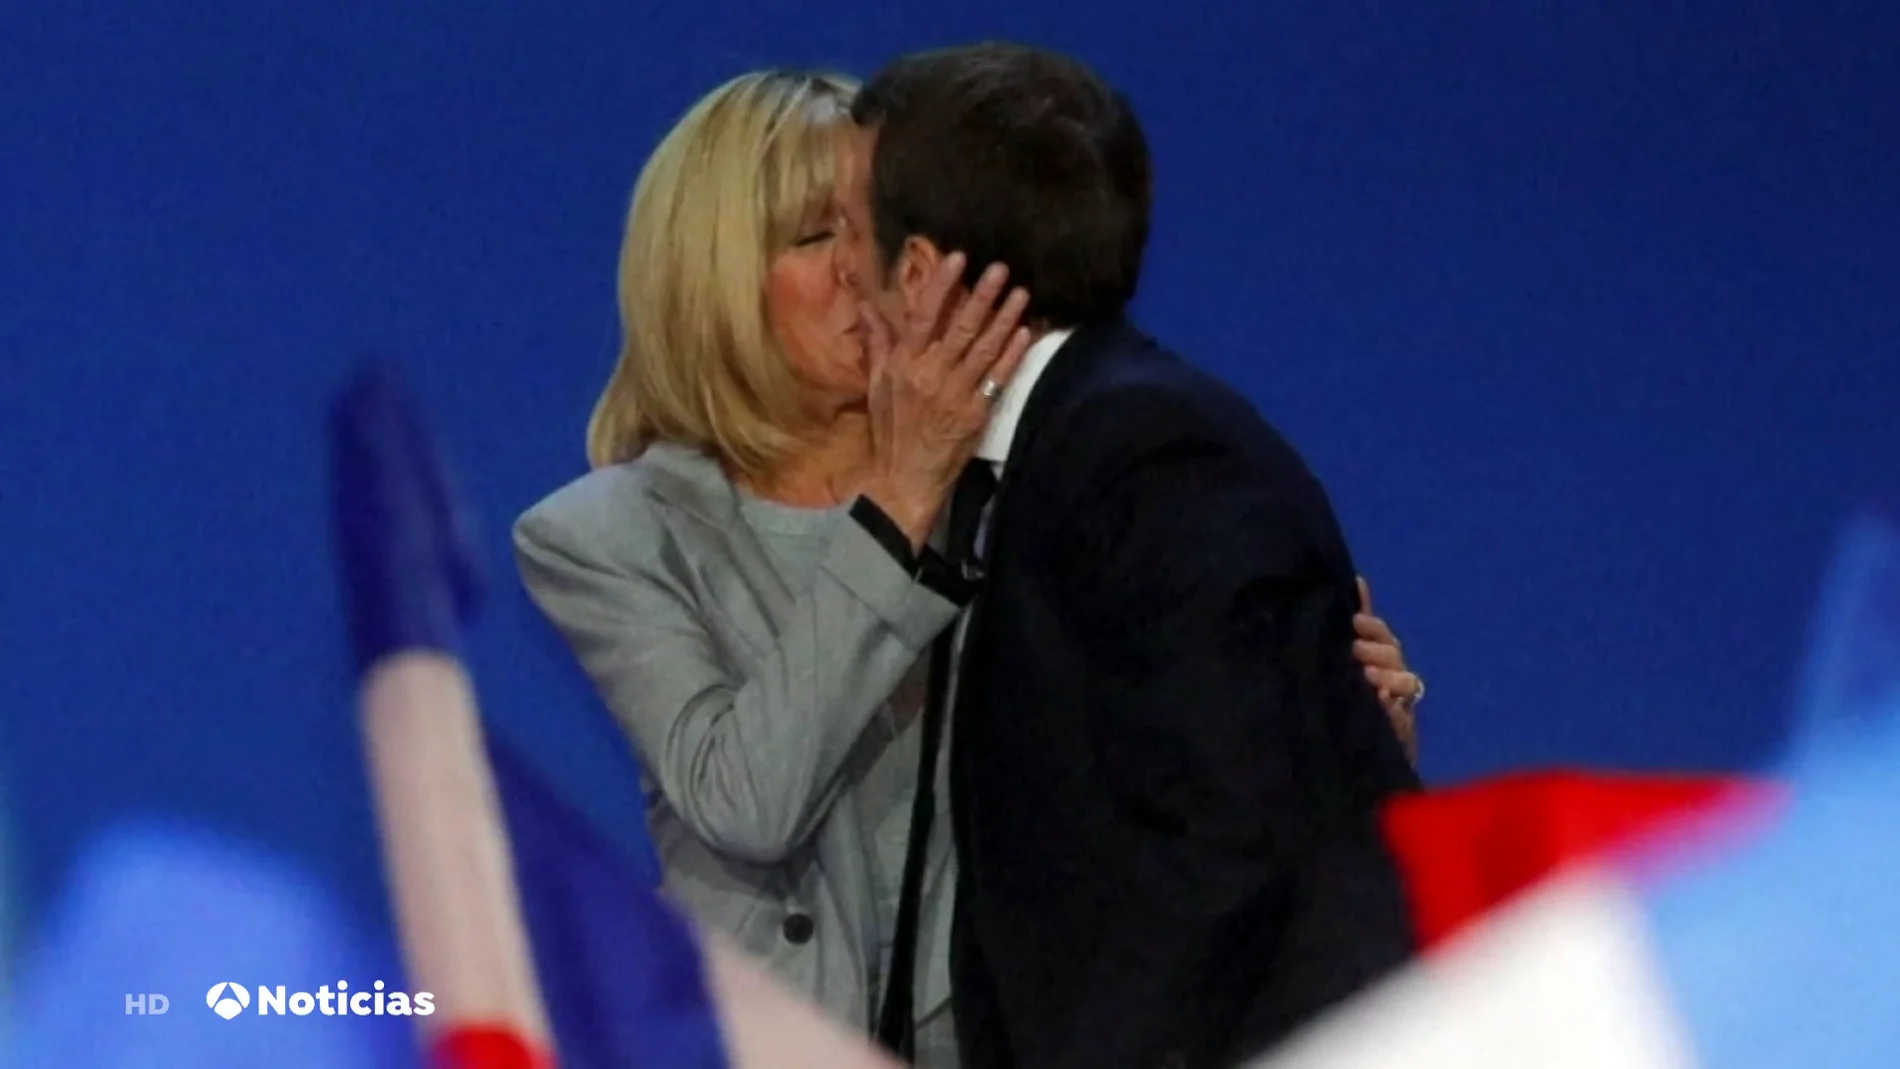 La historia de amor entre Emmanuel Macron y Brigitte que rompió moldes en Francia